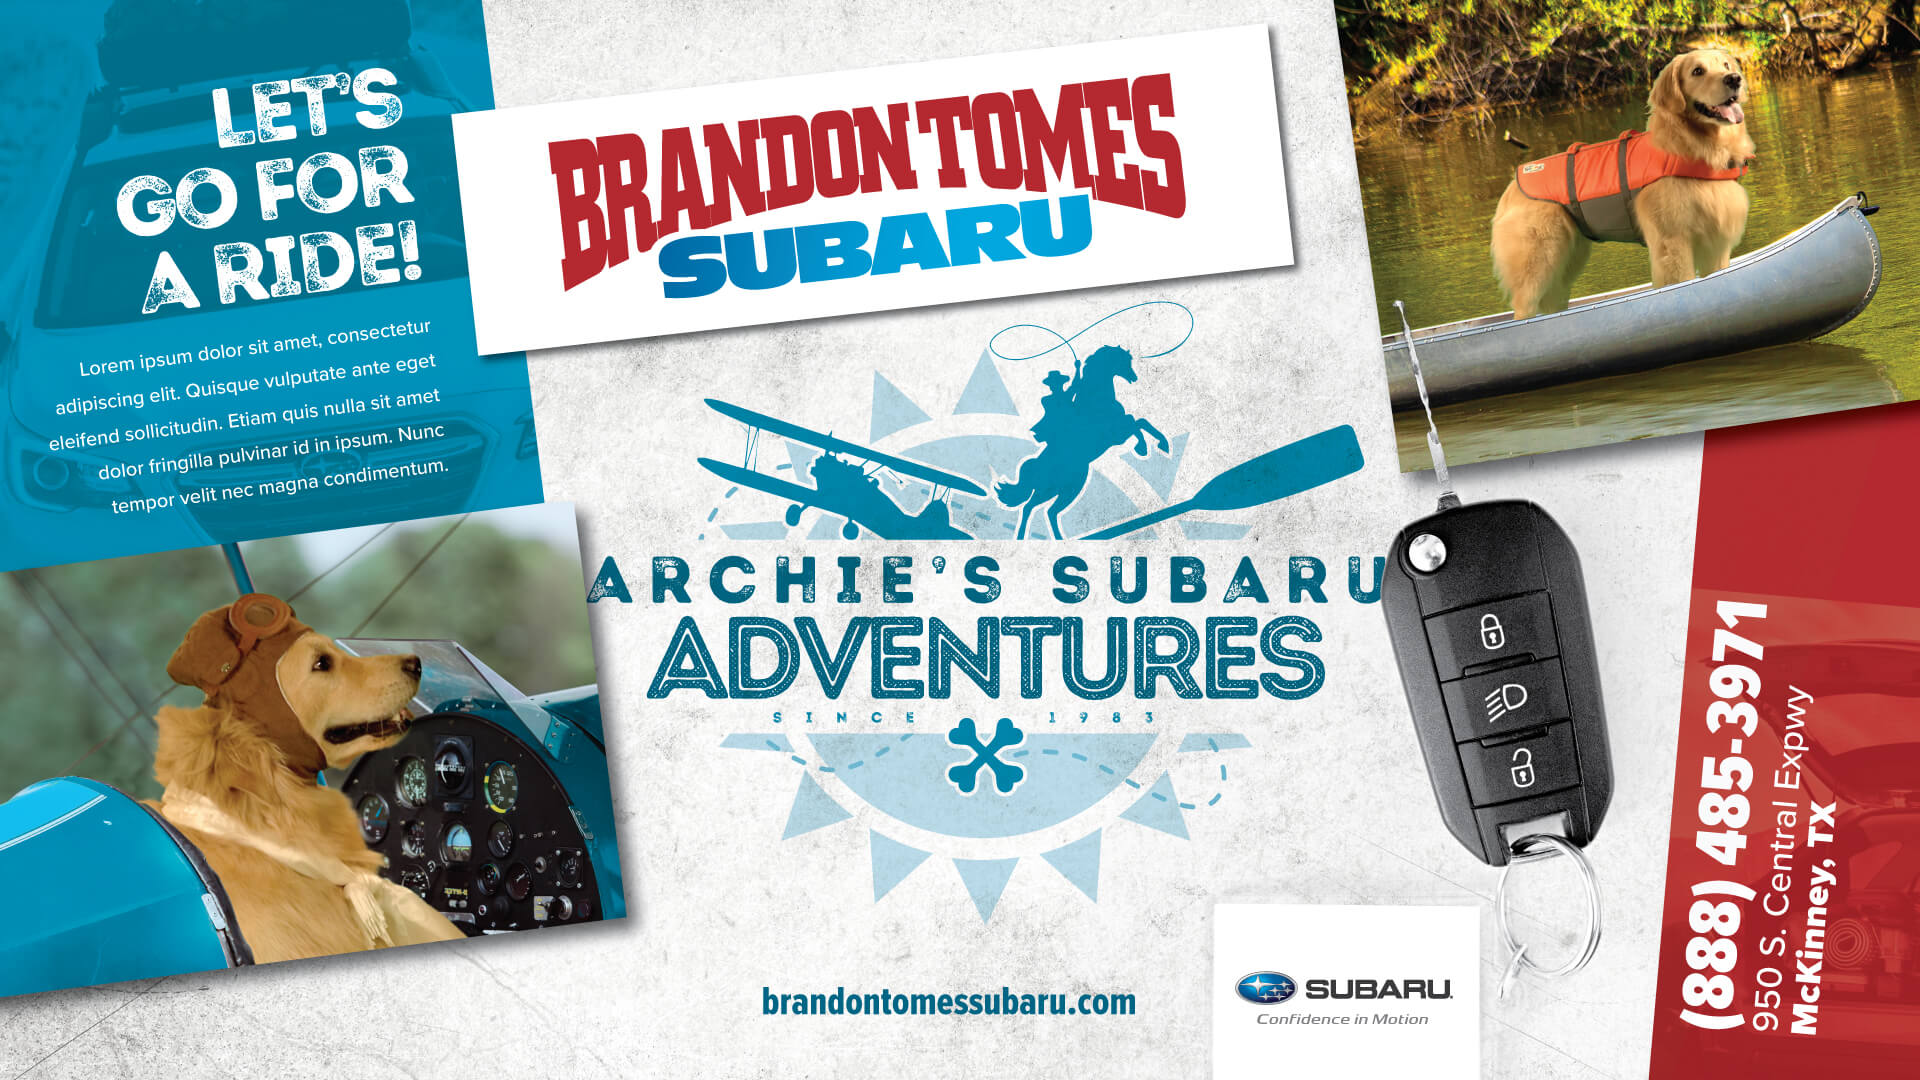 Archie's Subaru Adventures